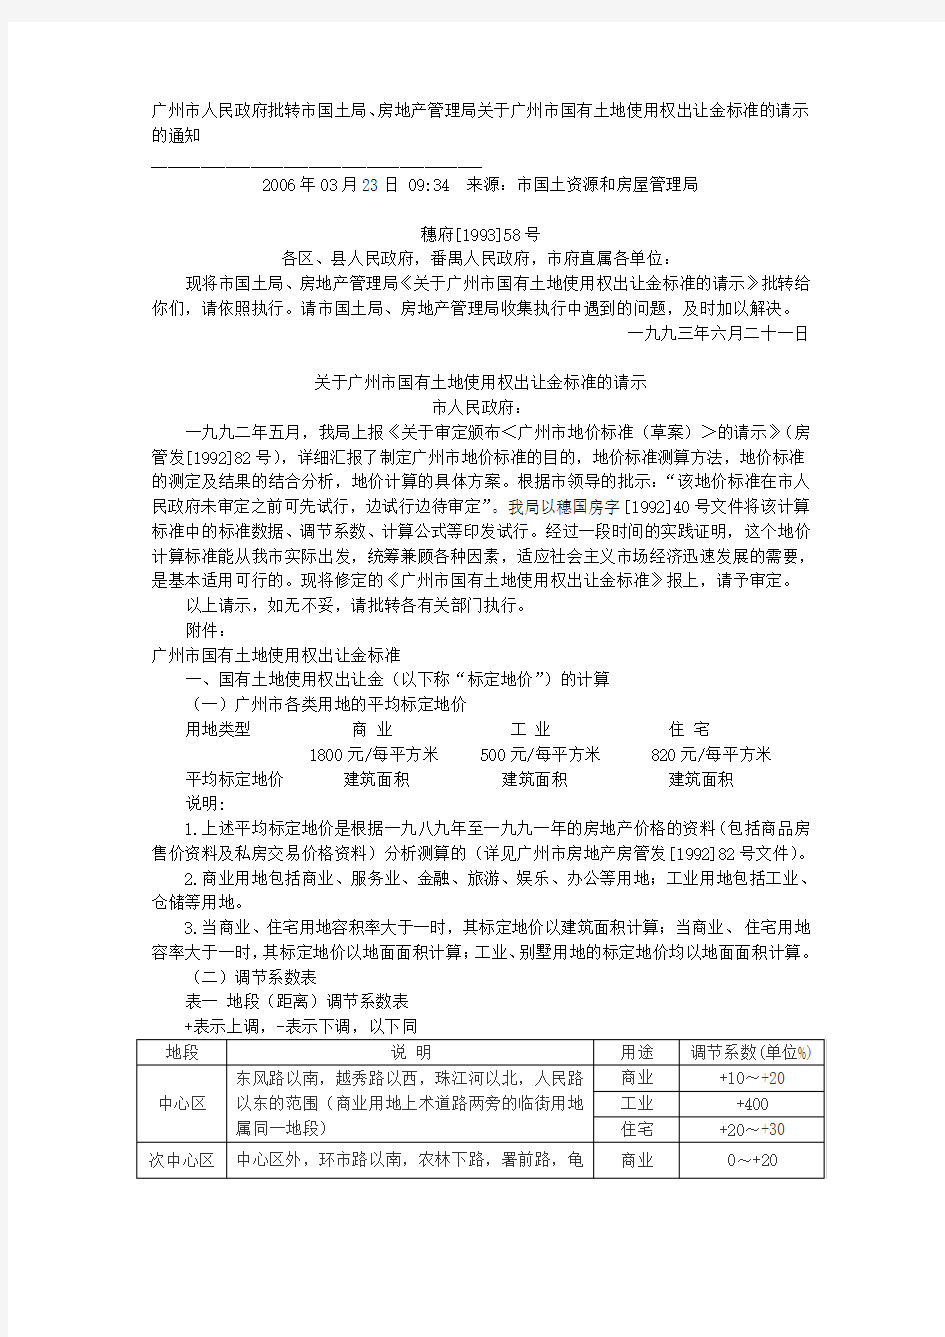 1993年广州市国有土地使用权出让金标准